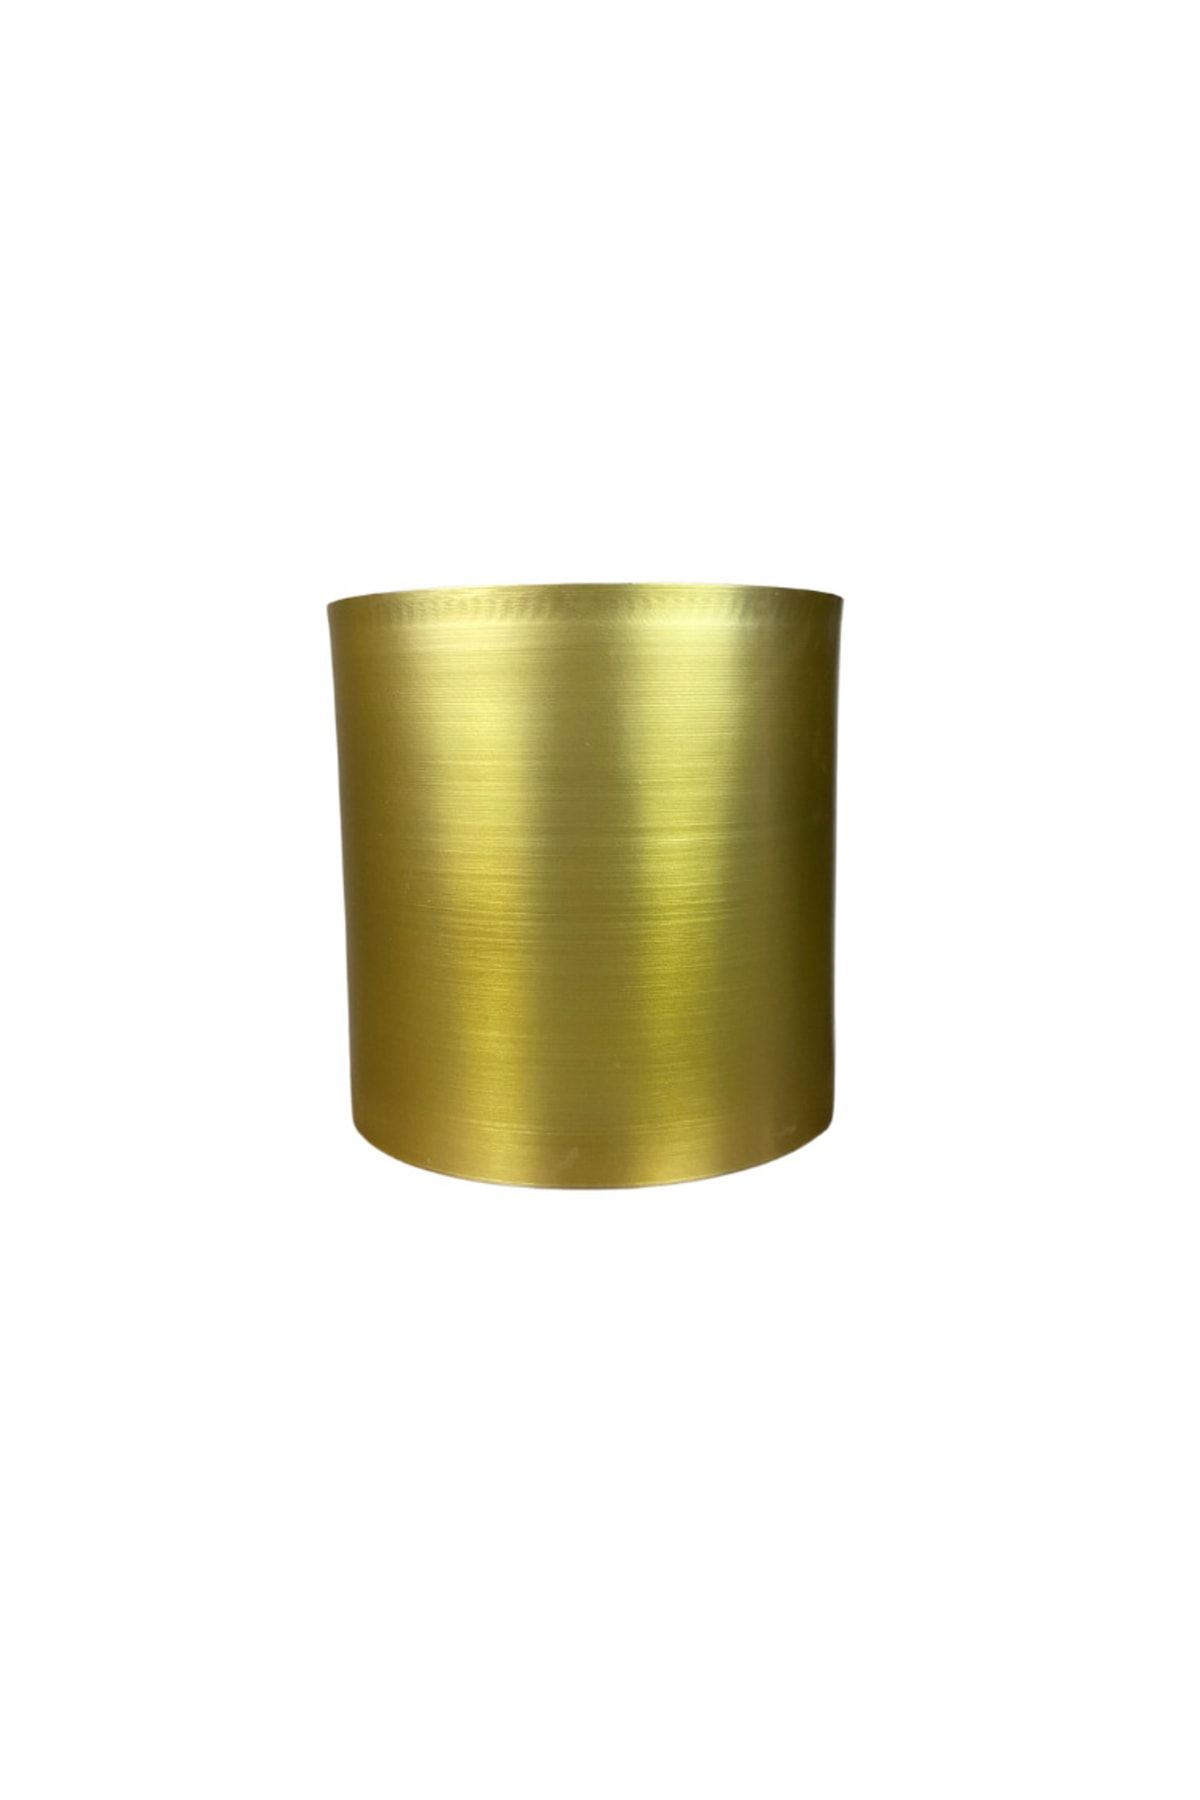 Cihan Çiçekçilik Gold Galvaniz Saksı 30x30 Paslanmaz